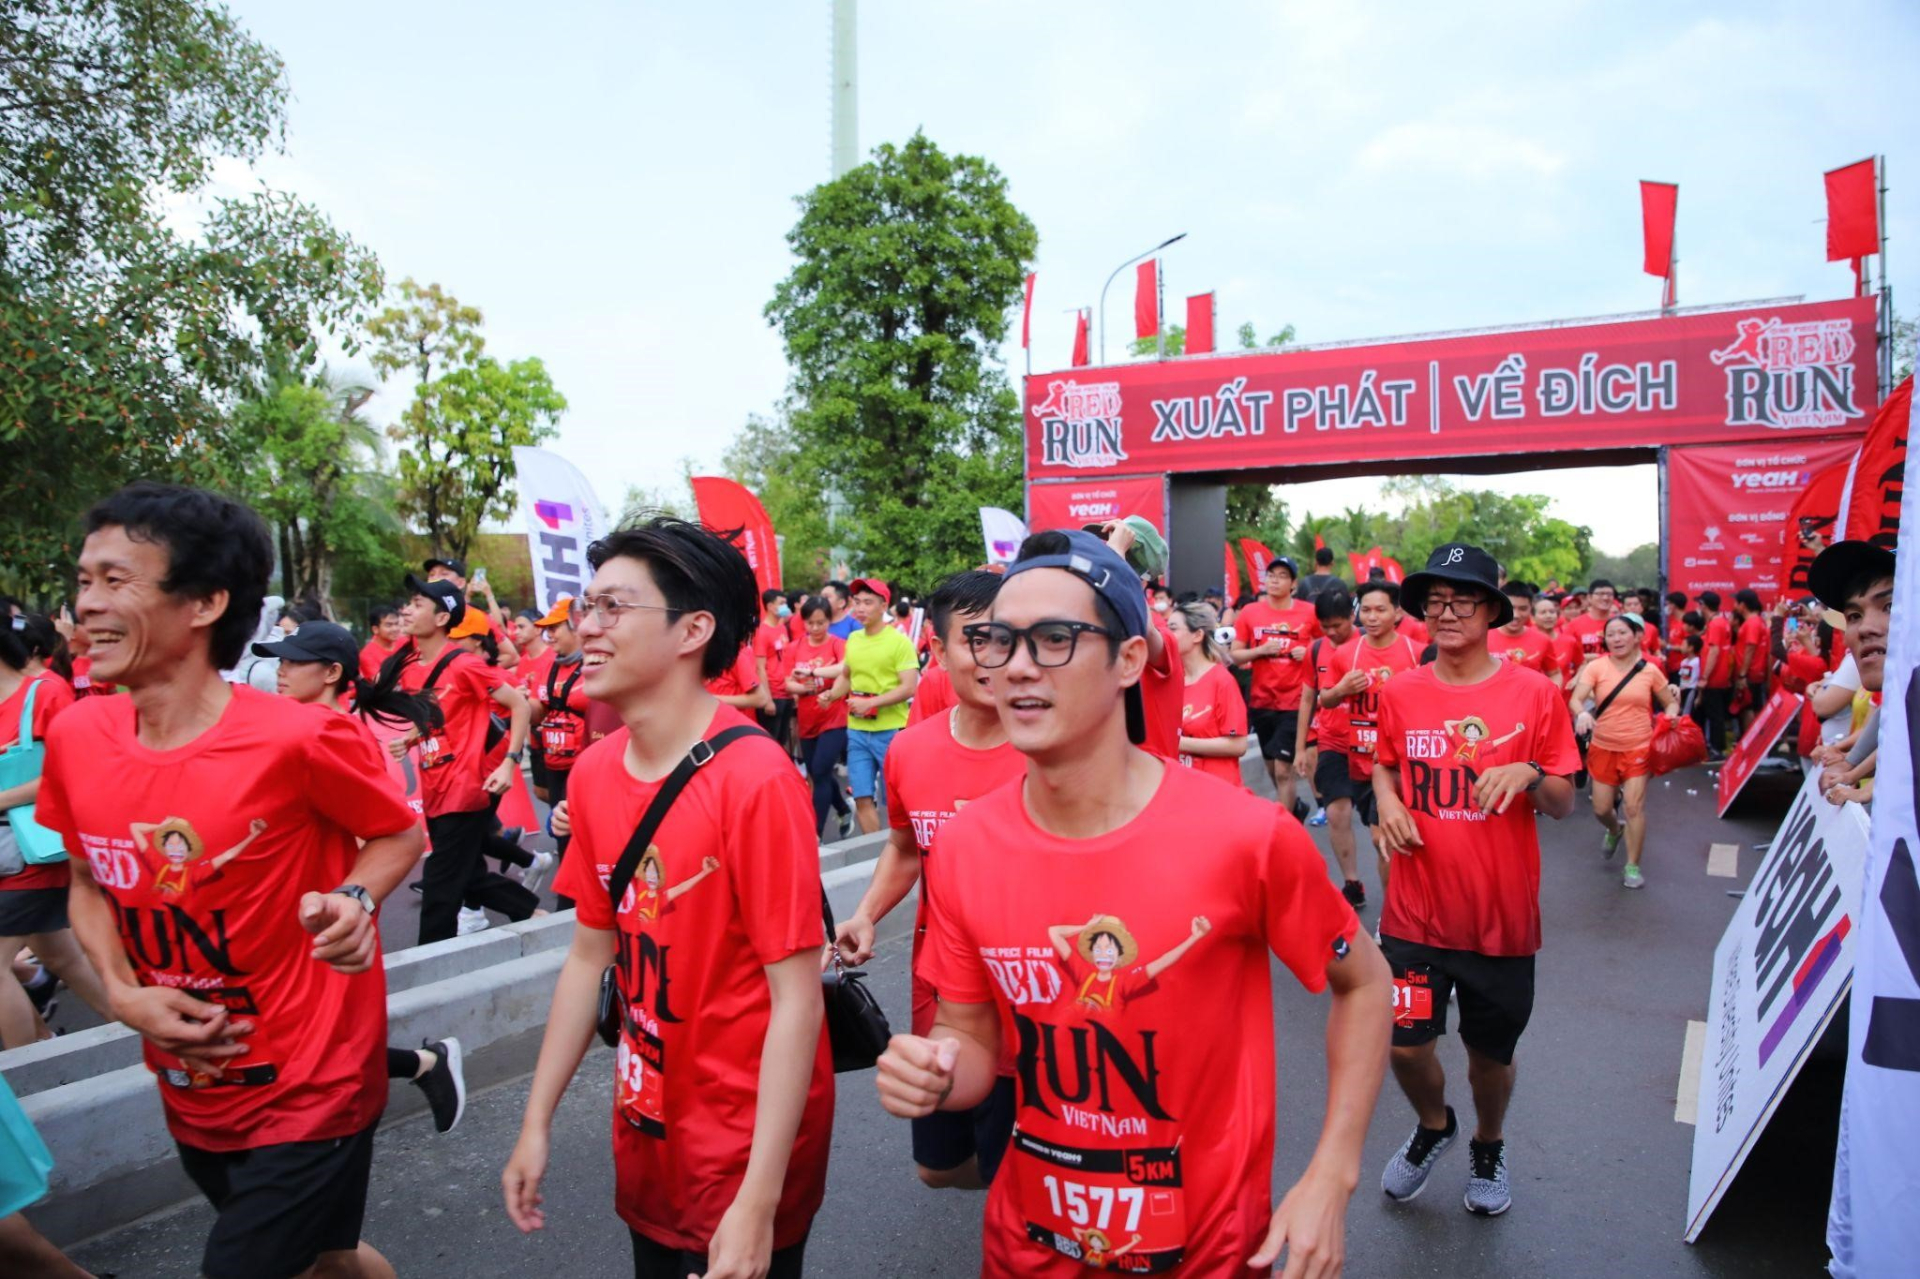 5.000 vận động viên sức khỏe vững vàng sẵn sàng chinh phục đường chạy One Piece Film Red Run - ảnh 7